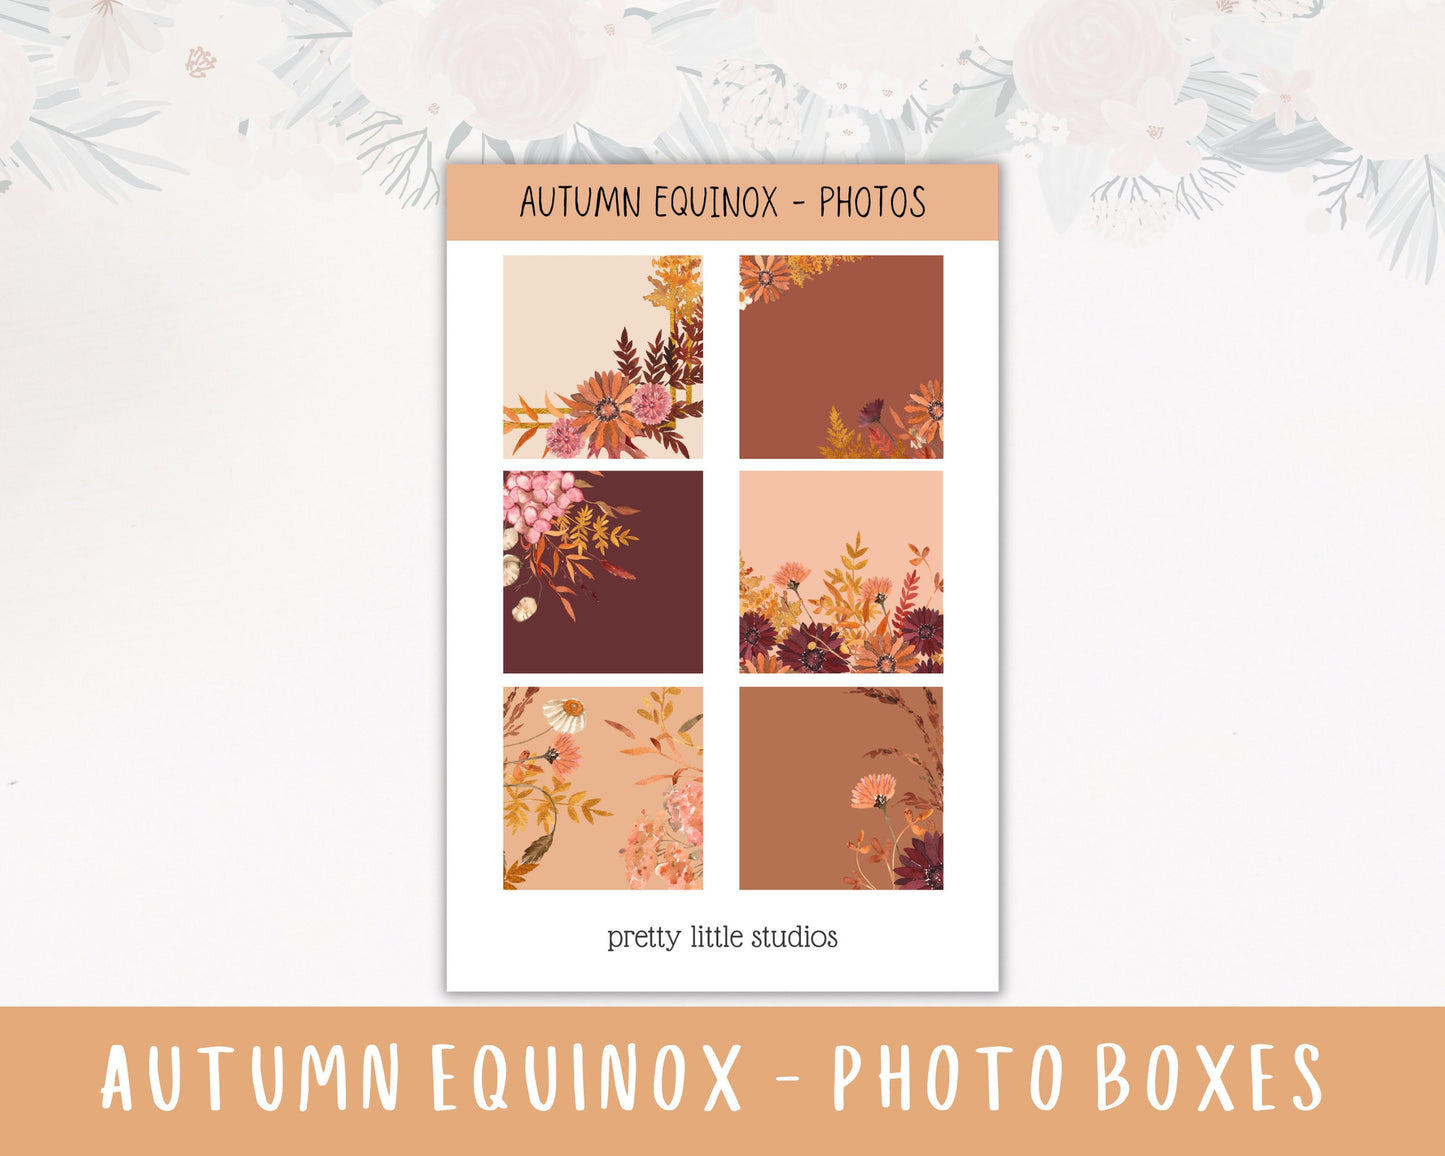 Autumn Equinox Happy Planner Sticker Kit - Standard Weekly Sticker Kit - Planner Stickers - Autumn Stickers Kit - Fall Stickers Kit